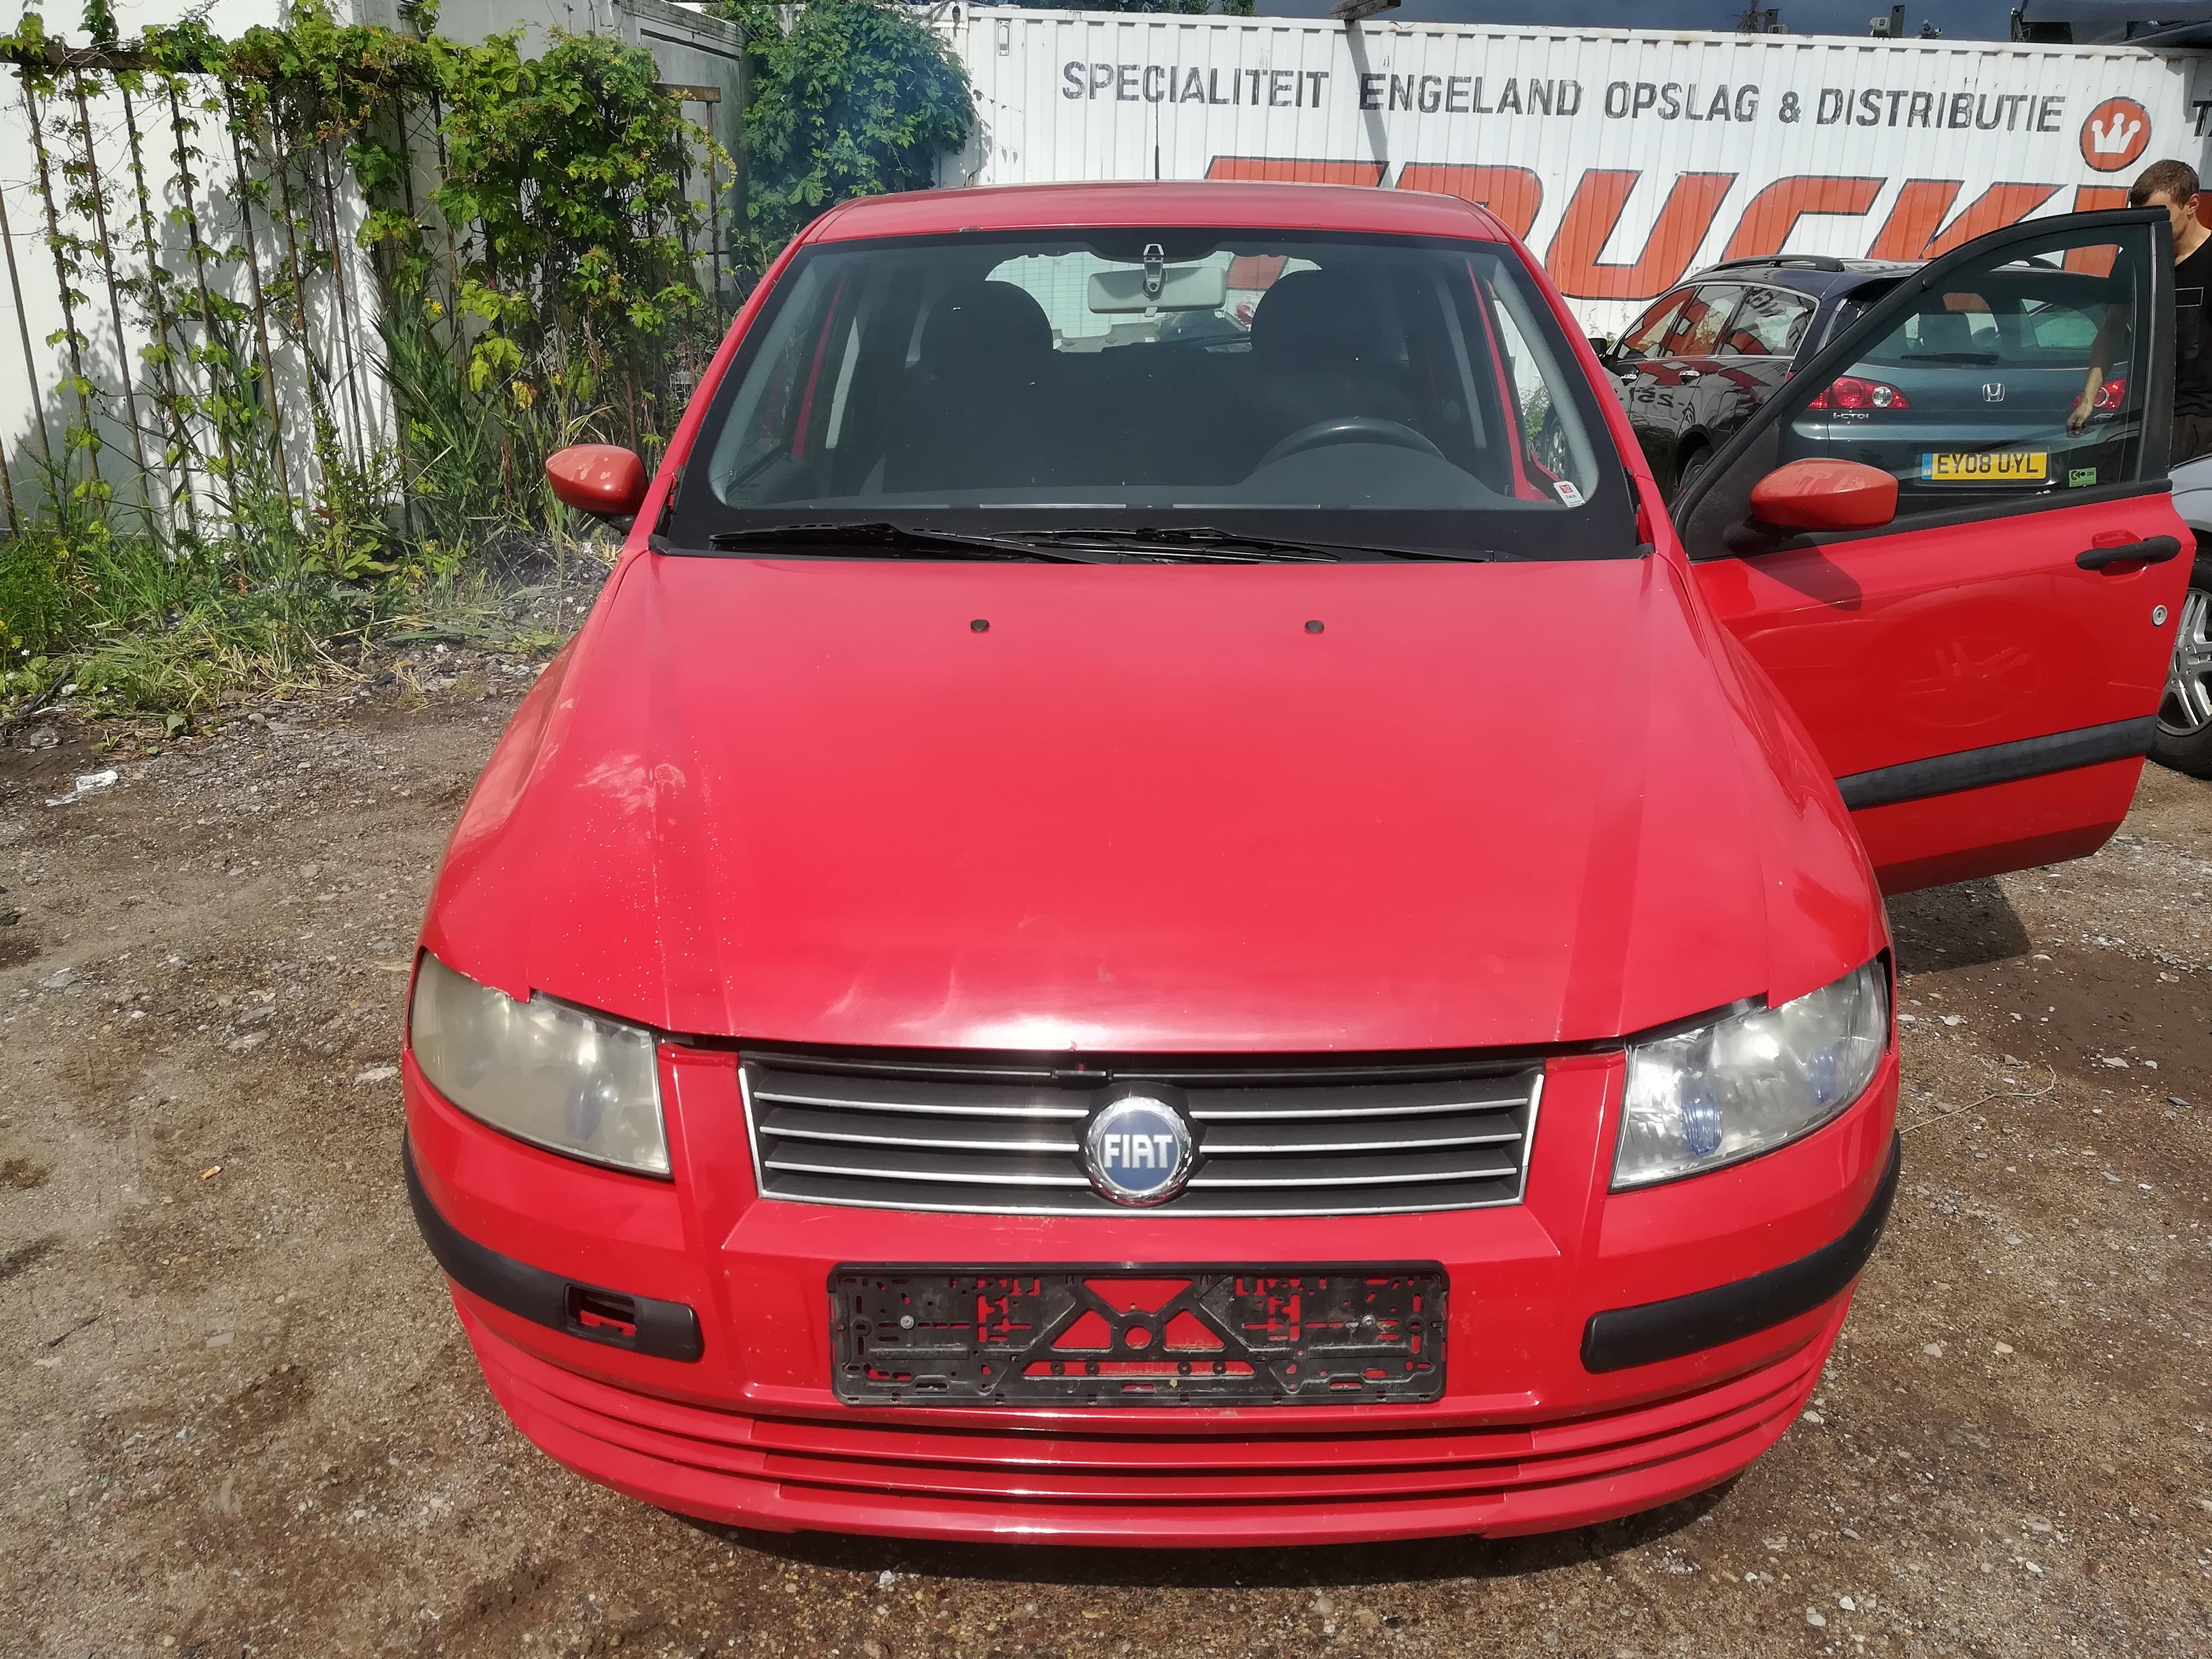 Used Car Parts Fiat STILO 2002 1.6 Mechanical Hatchback 4/5 d. Red 2019-7-18